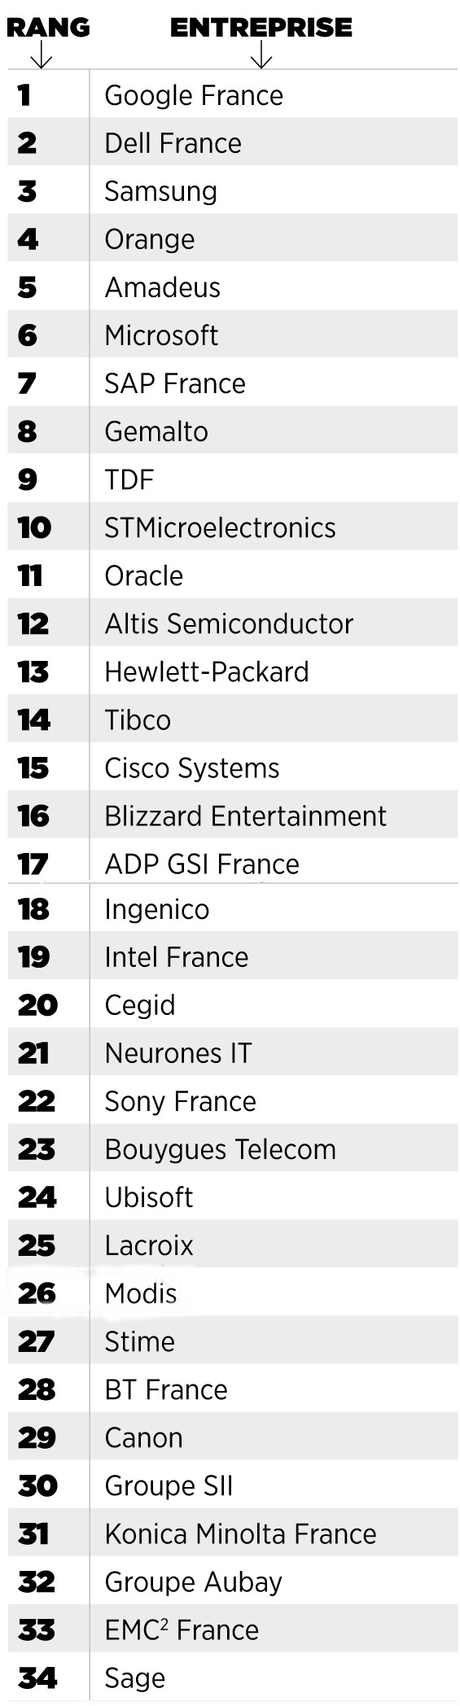 Où rencontrer les meilleurs employeurs High Tech de France ?